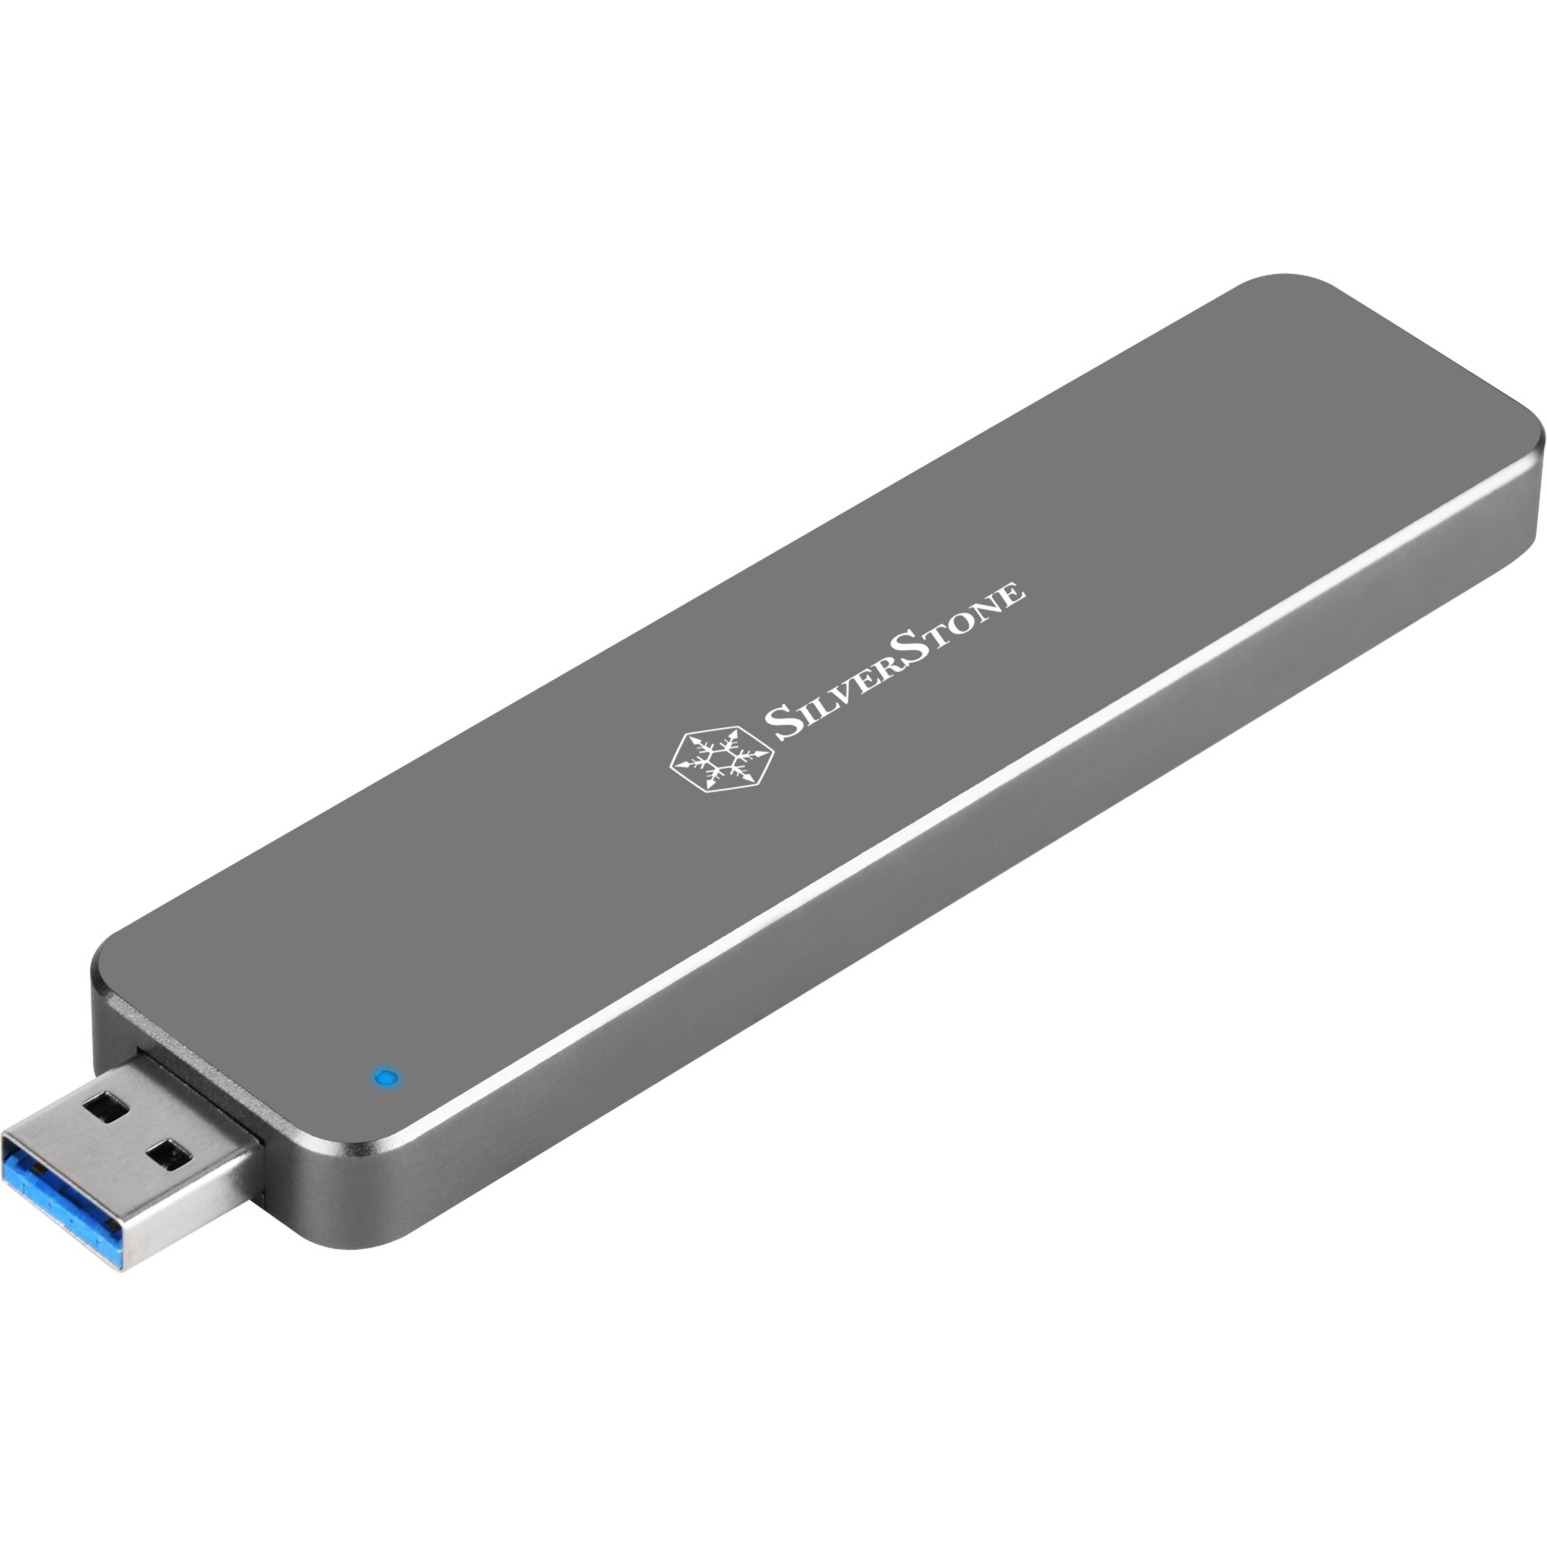 Image of Alternate - SST-MS09C USB 3.1, Laufwerksgehäuse online einkaufen bei Alternate